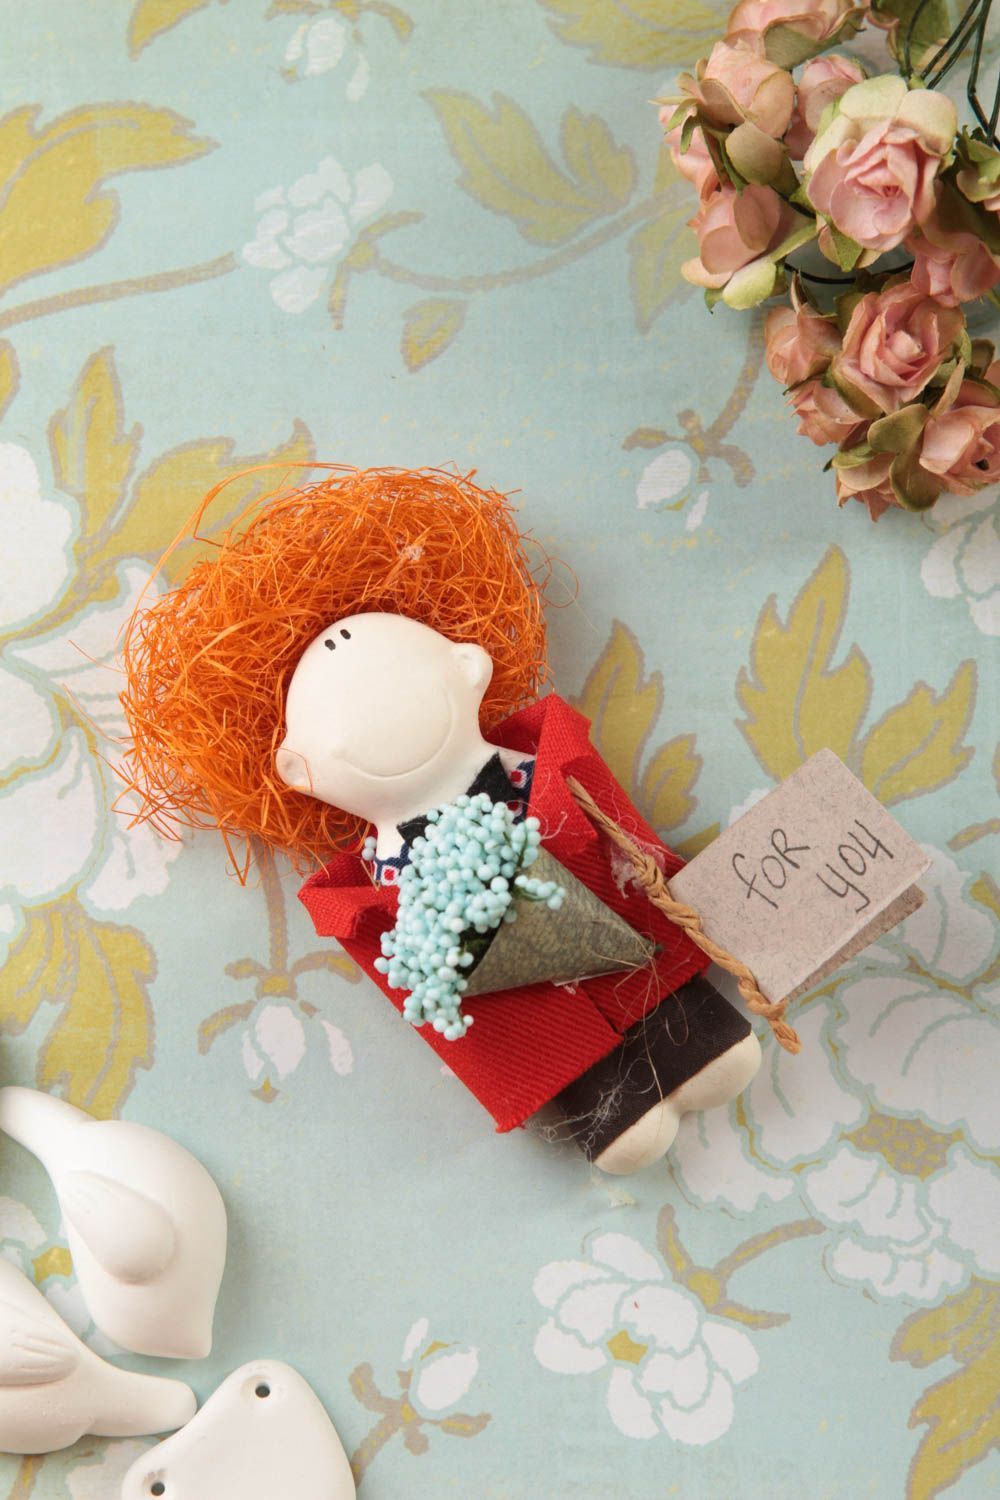 Handmade Spielzeug Magnet Deko Idee Haus Geschenkidee für Freundin ungewöhnlich foto 1